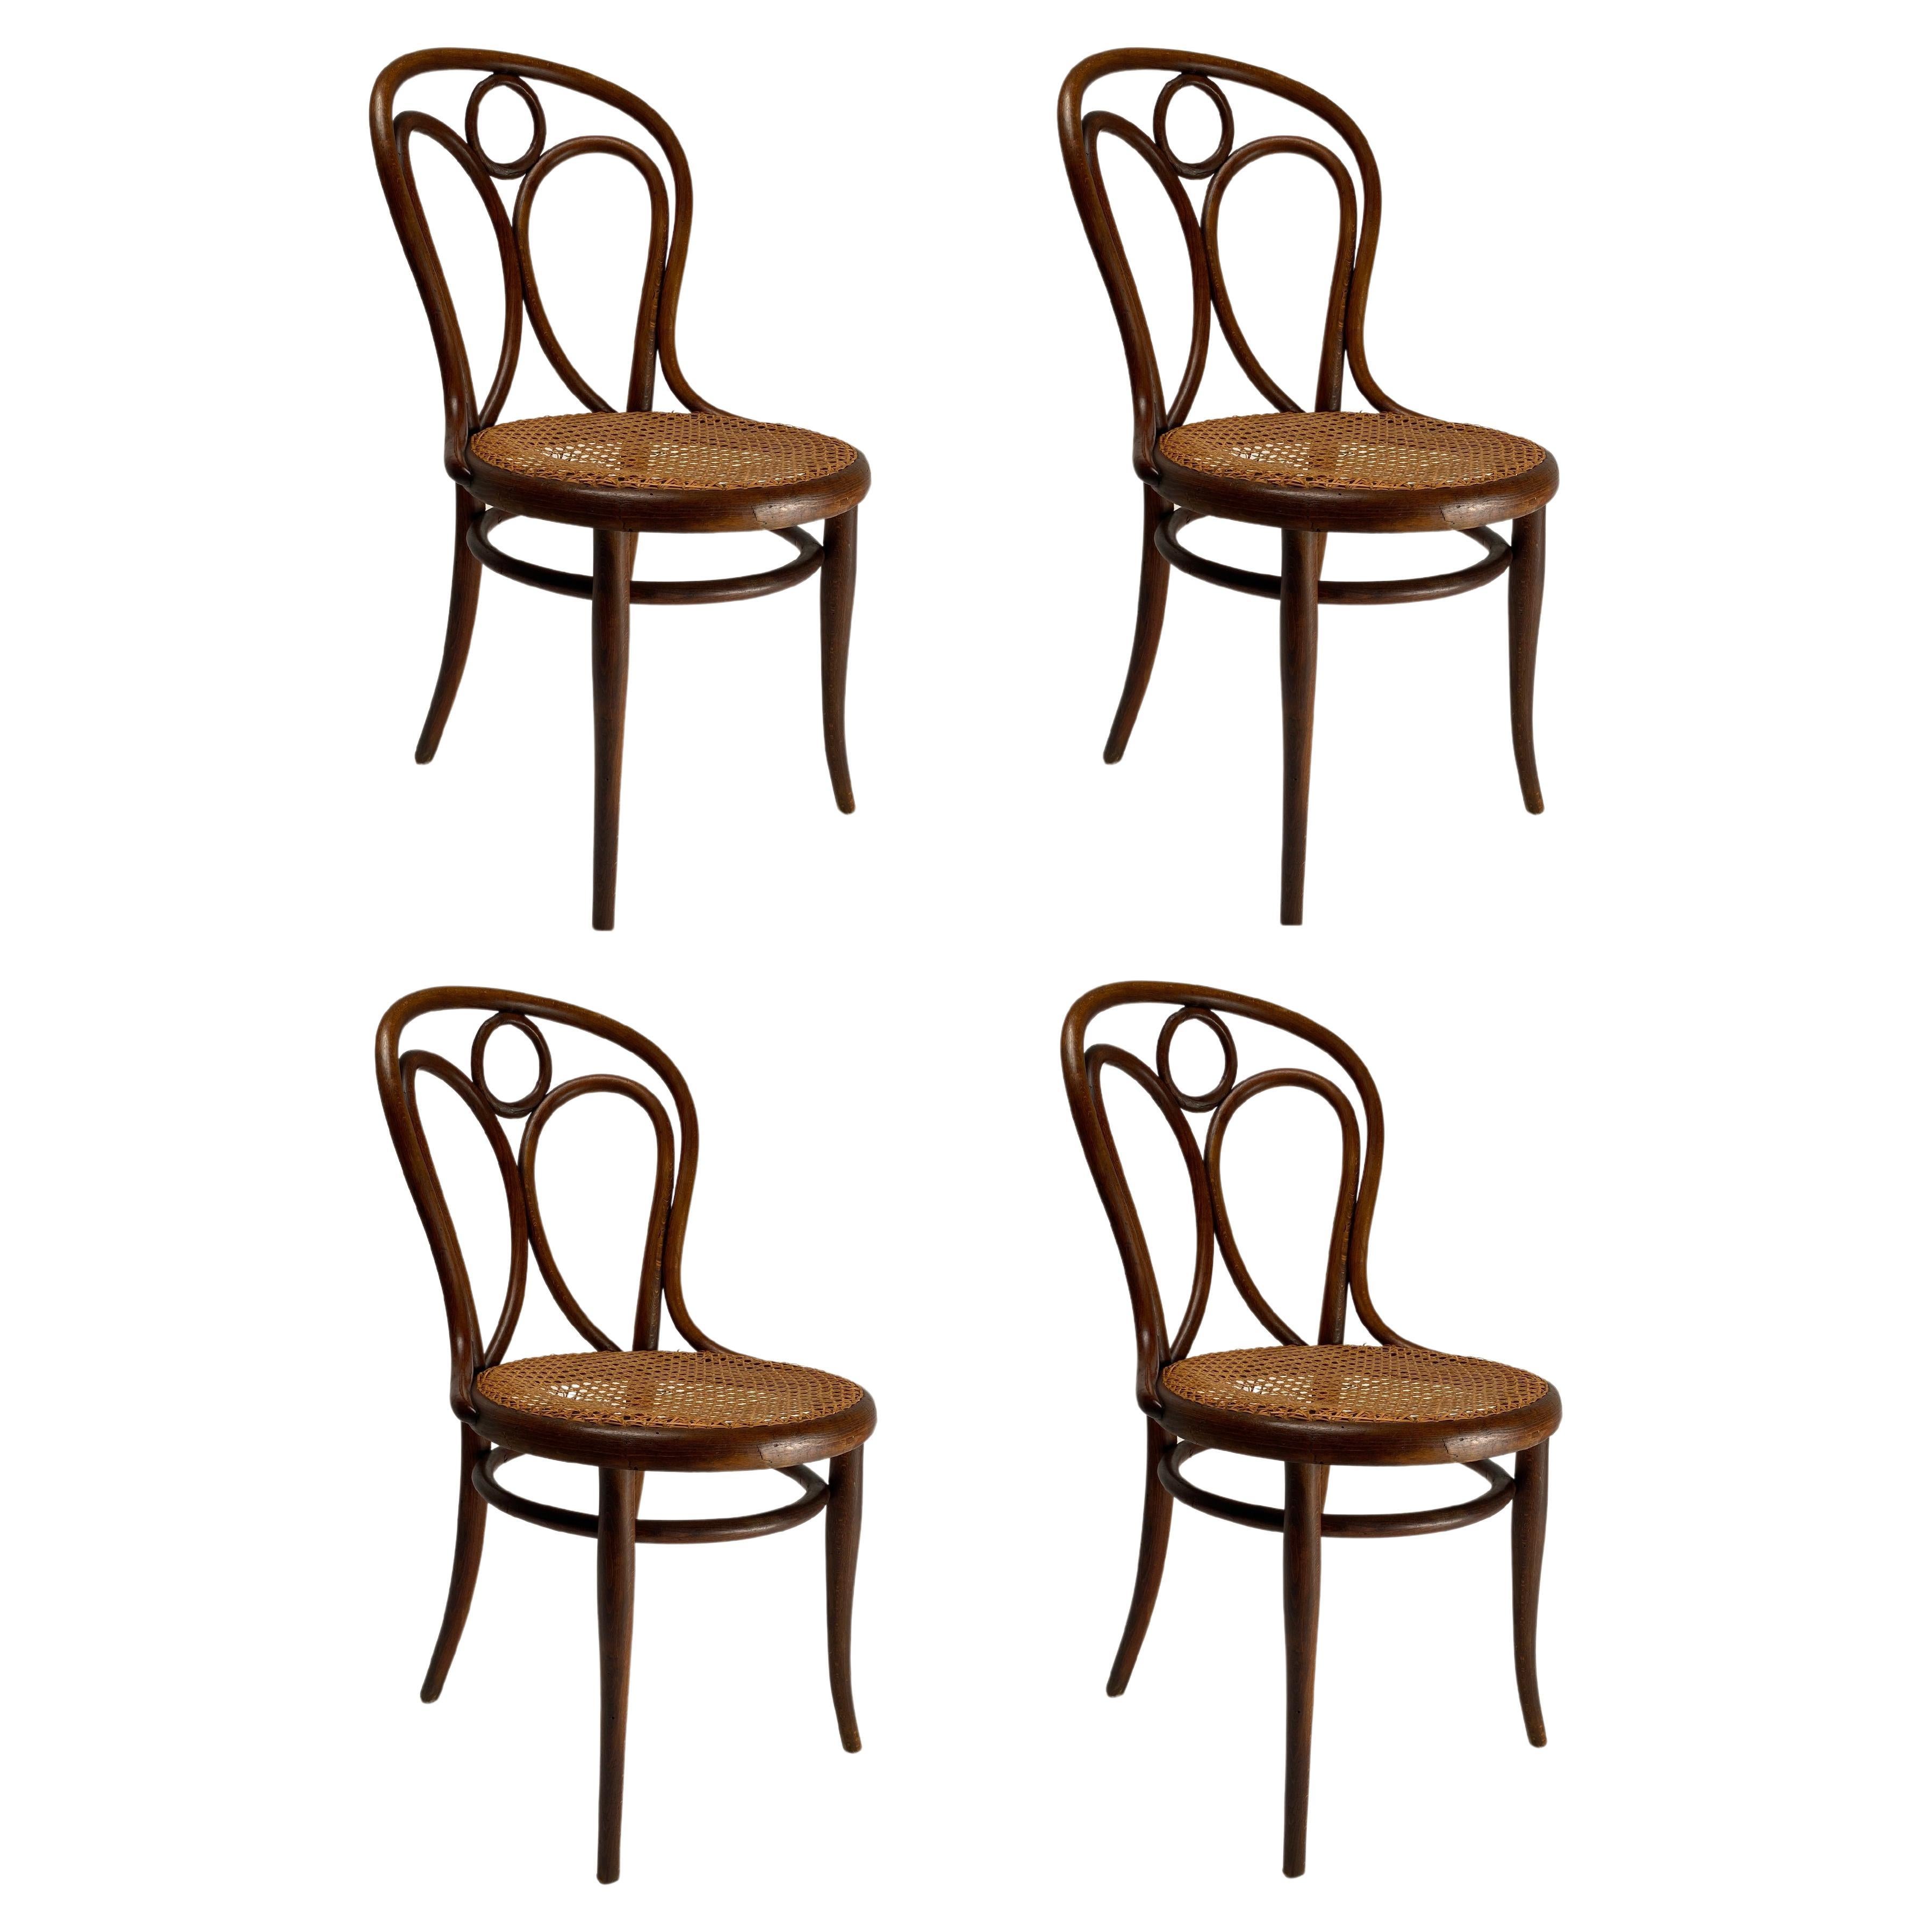 Ensemble de 4 chaises en hêtre courbé Thonet, Autriche, début des années 1900